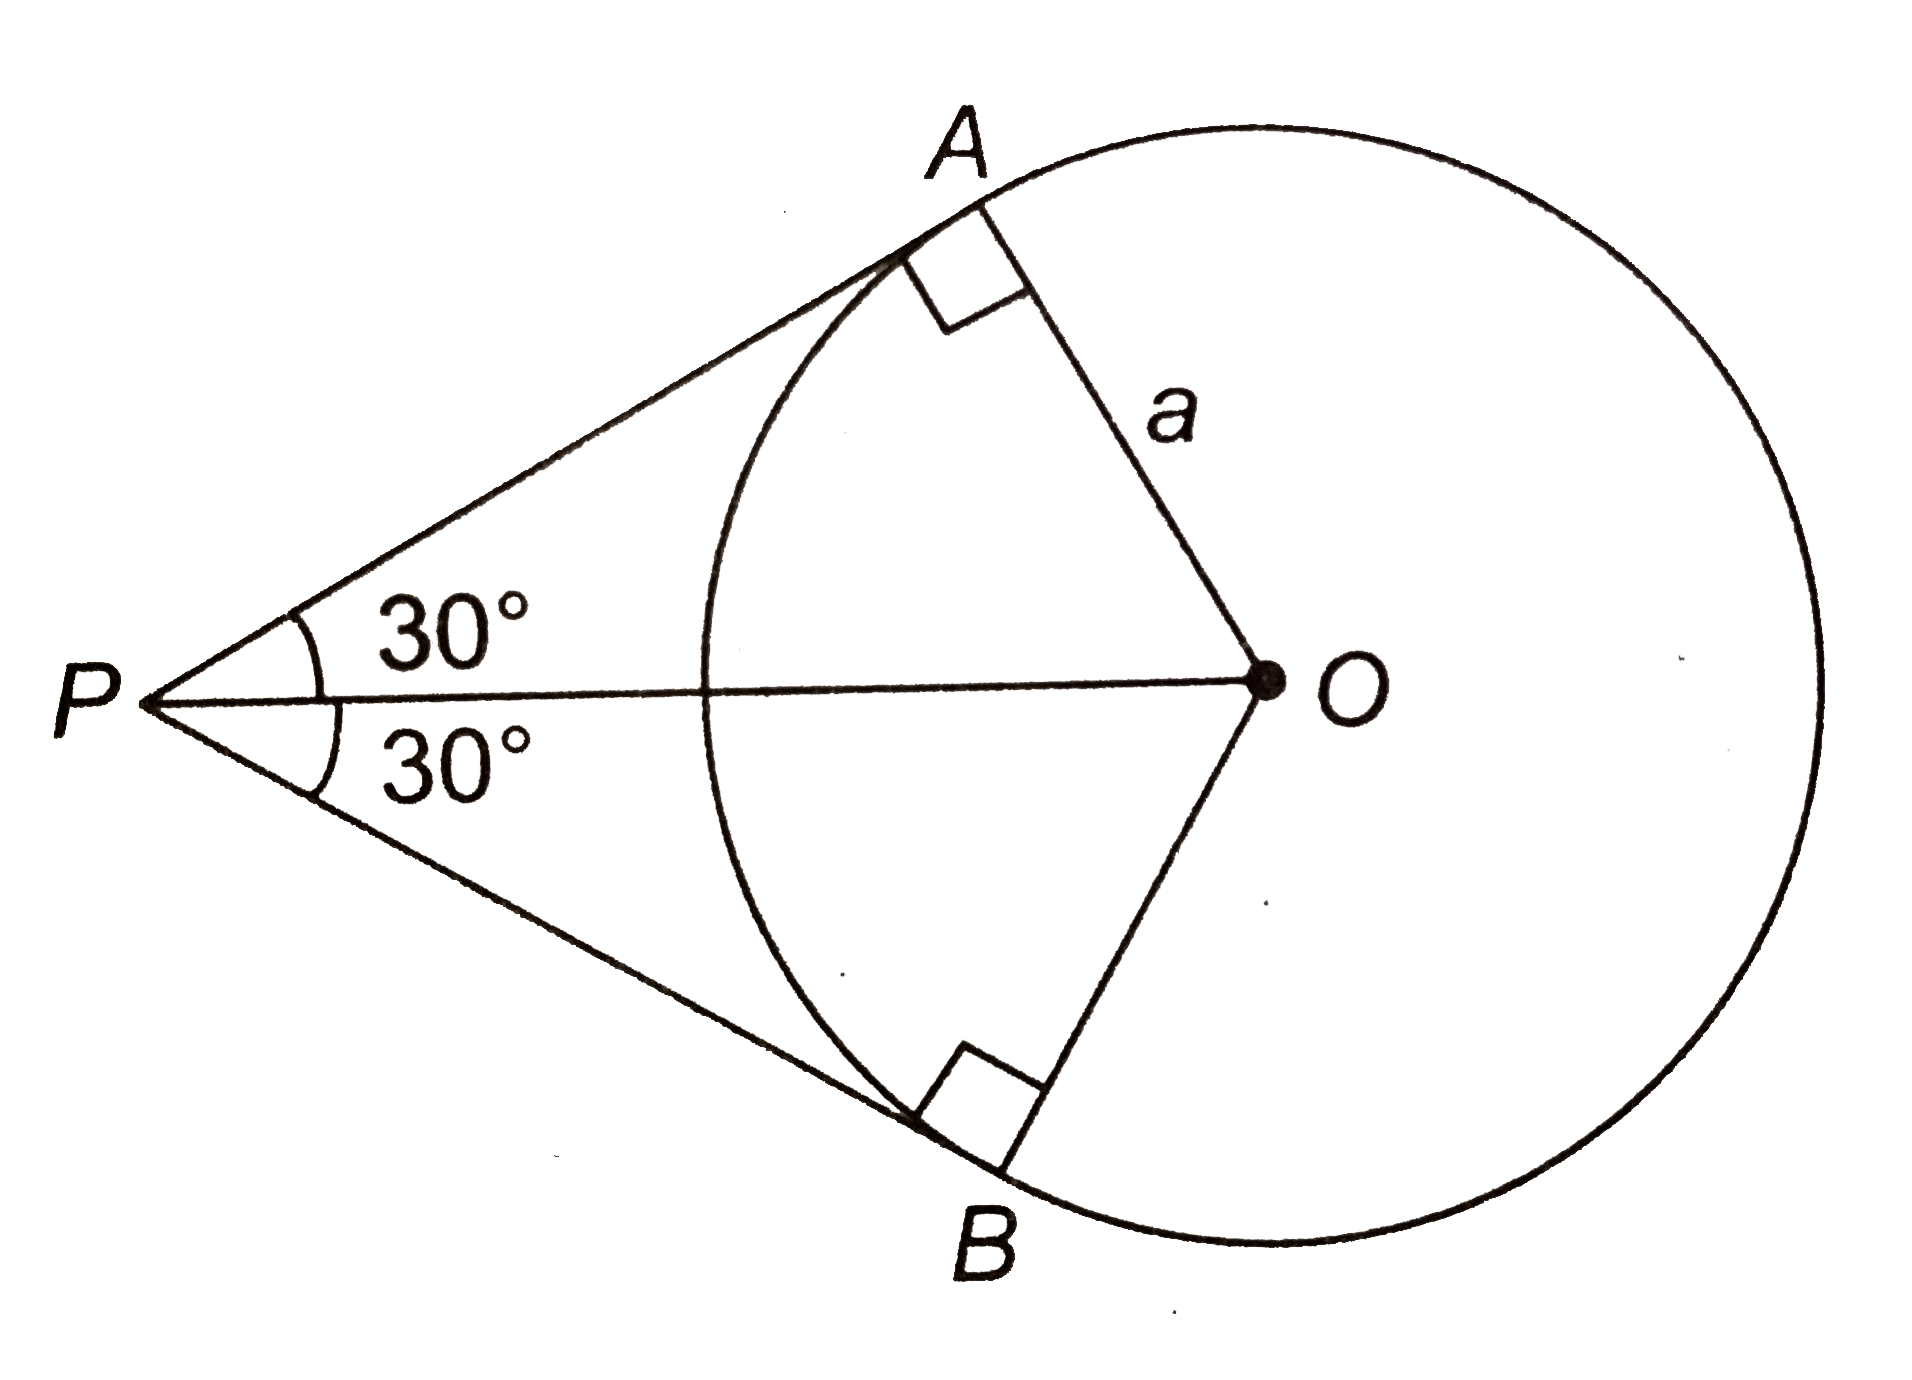 यदि O केन्द्र और a त्रिज्या के वृत्त पर बाह्य बिन्दु P से खींची गई दो स्पर्श रेखाओं के मध्य कोण 60^(@) है, तो OP की लम्बाई ज्ञात कीजिए।